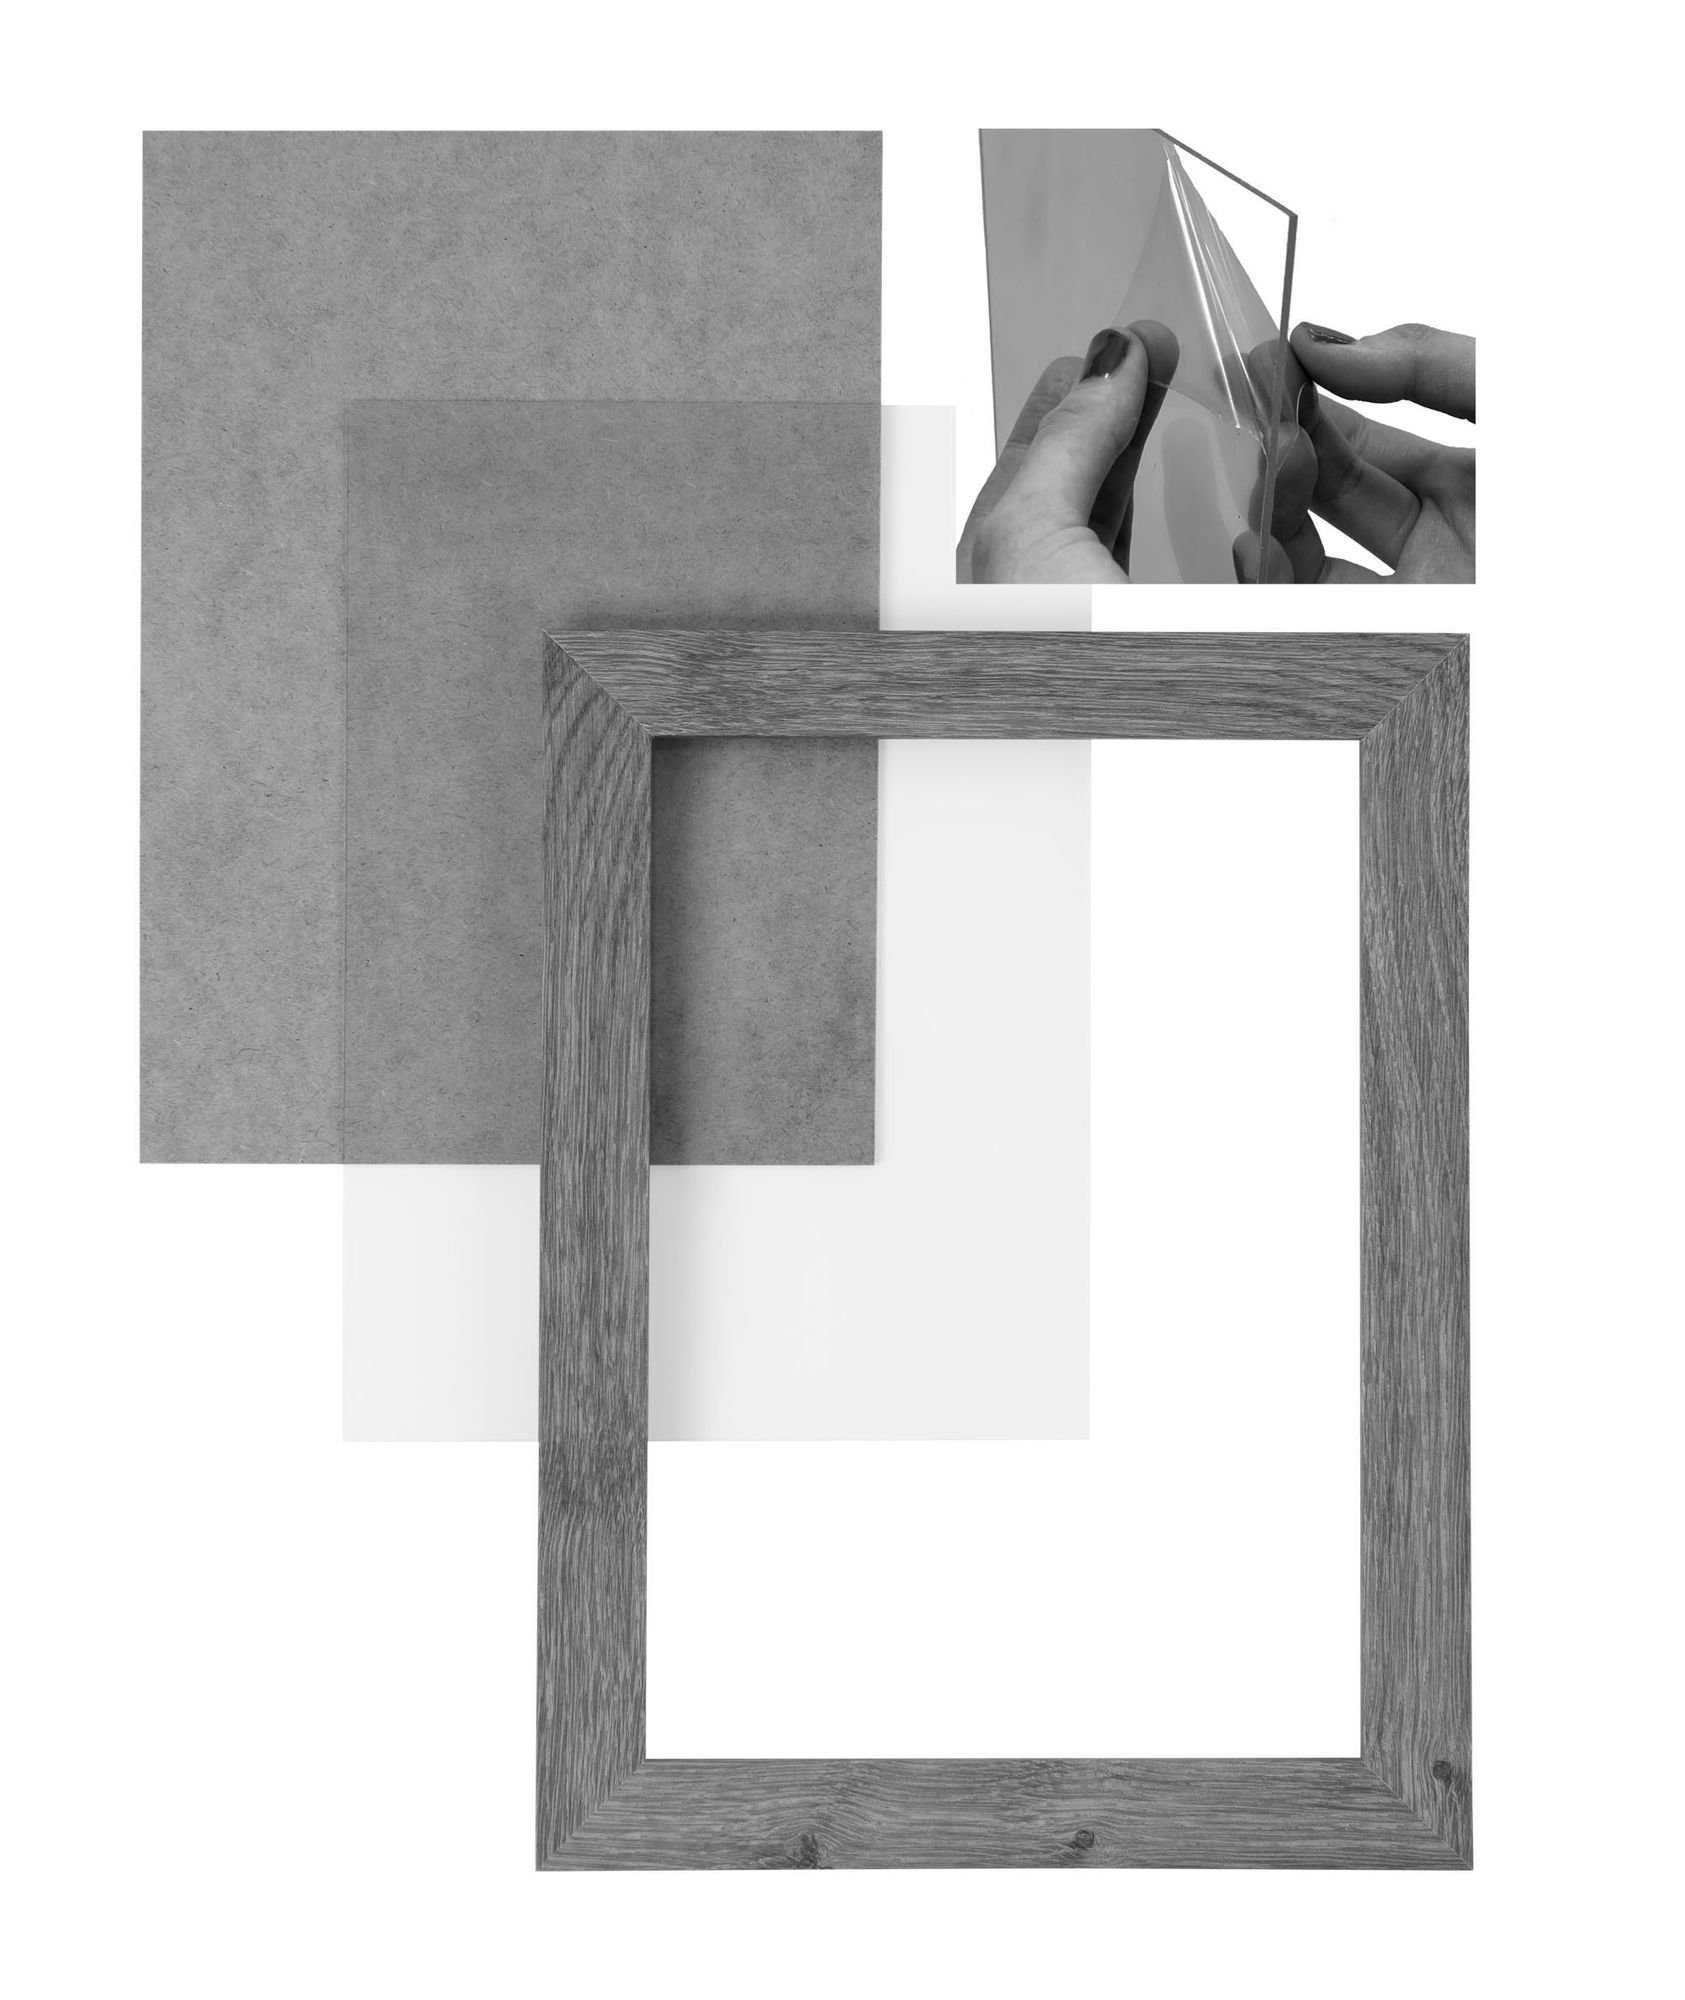 inkl. 52x88 Clamaro MDF nach Aufhänger eckiger Maß Rahmen CLAMARO FSC® Holz handgefertigt 'Collage' Bilderrahmen Bilderrahmen stahlgrau Rückwand und Moderner Acrylglas, in